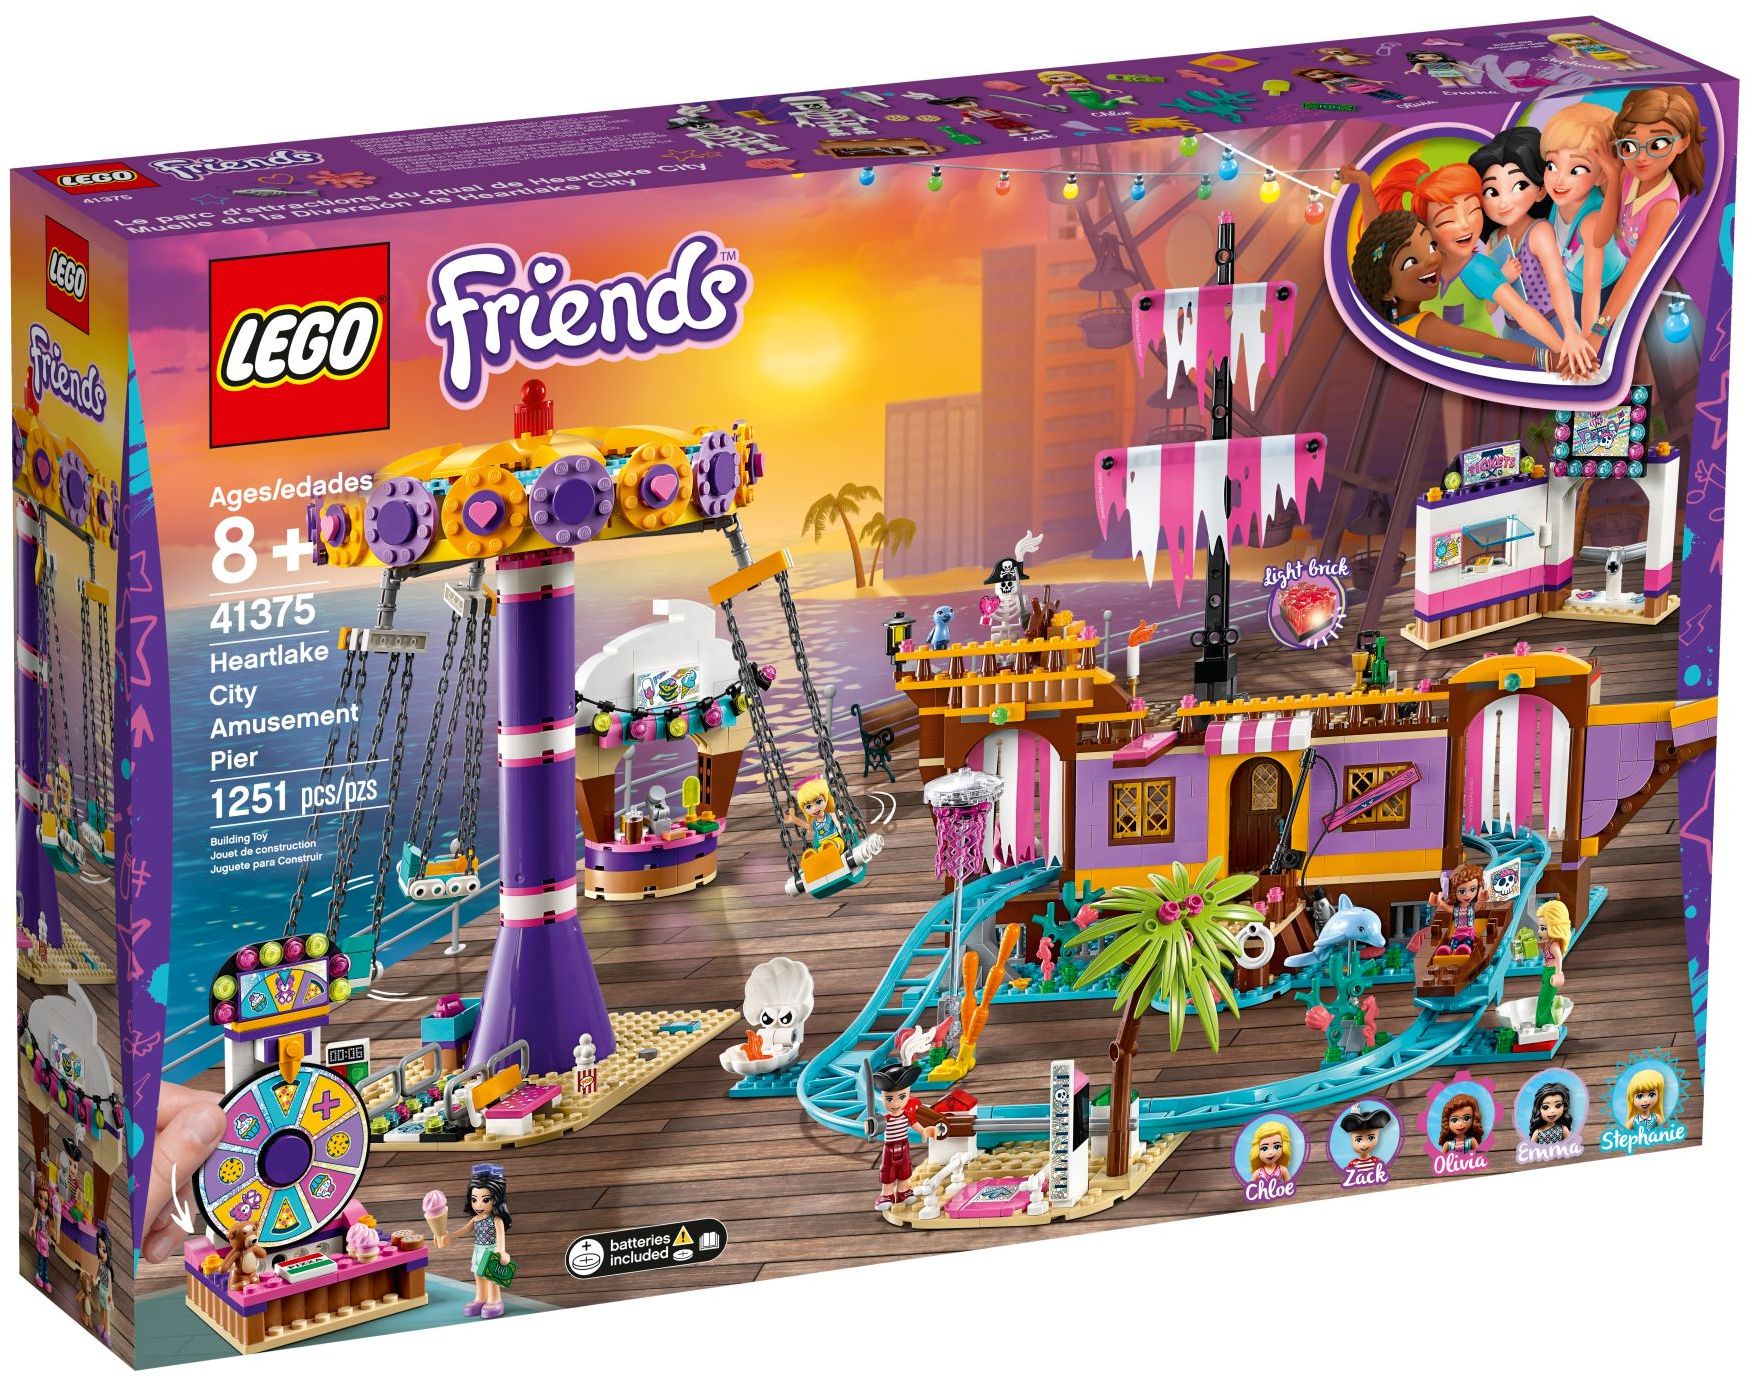 Markér blast søsyge LEGO® Friends 41375 Heartlake City Amusement Pier (1251 pieces) – AESOP'S  FABLE